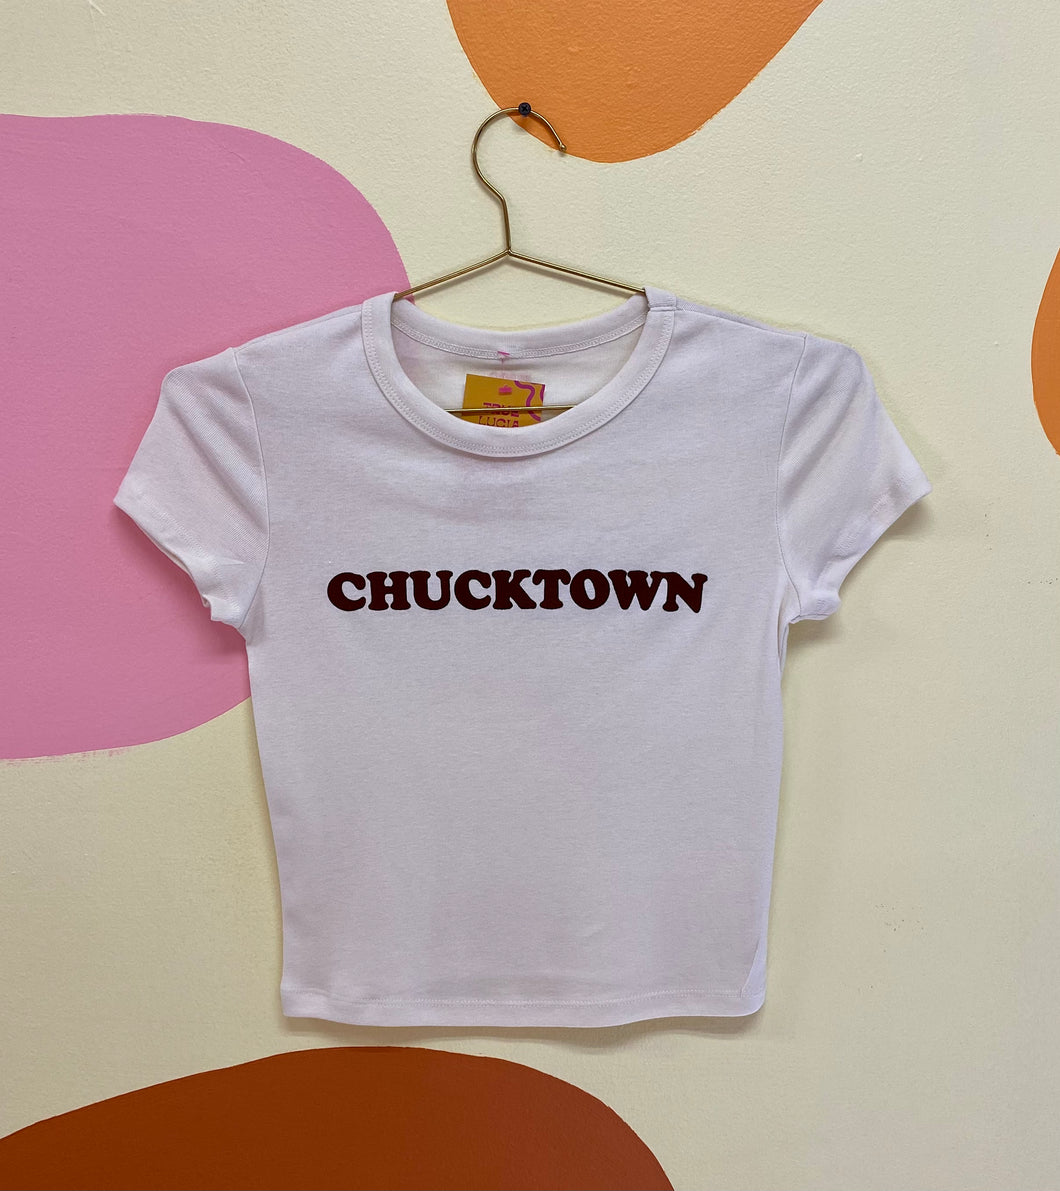 Chucktown baby tee